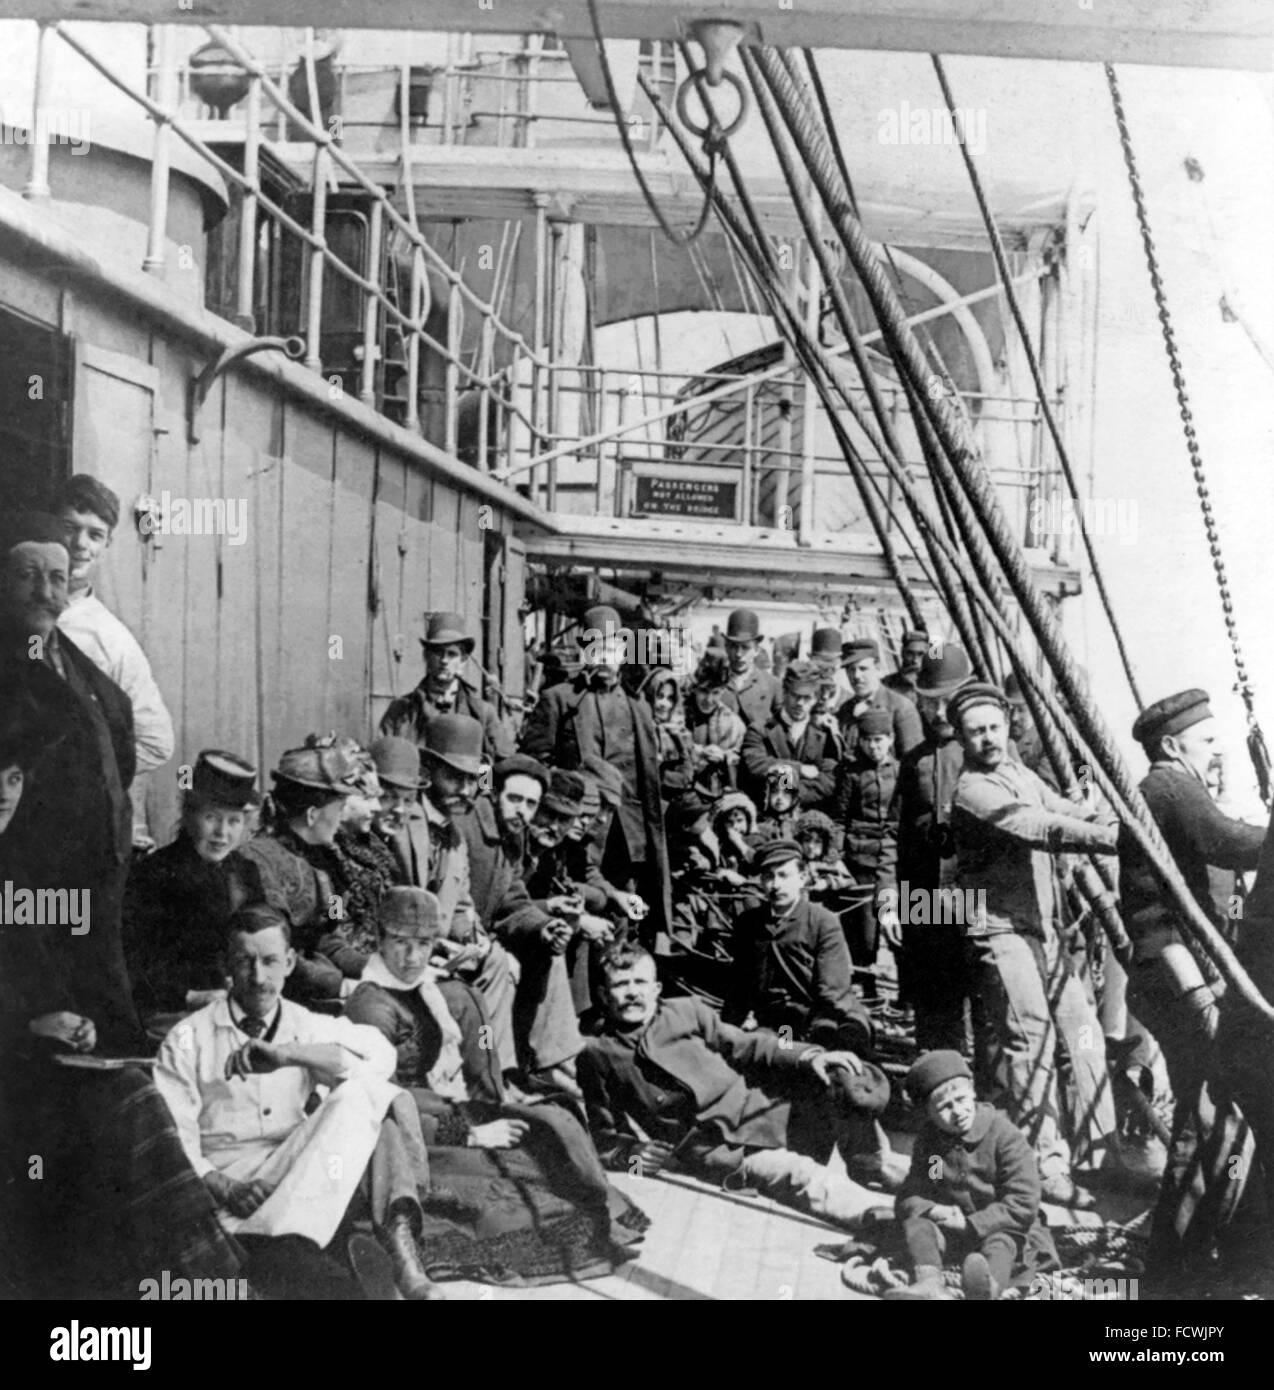 Auswanderer in den USA auf dem unteren Deck eines Schiffes auf hoher See, 1890 Stockfoto